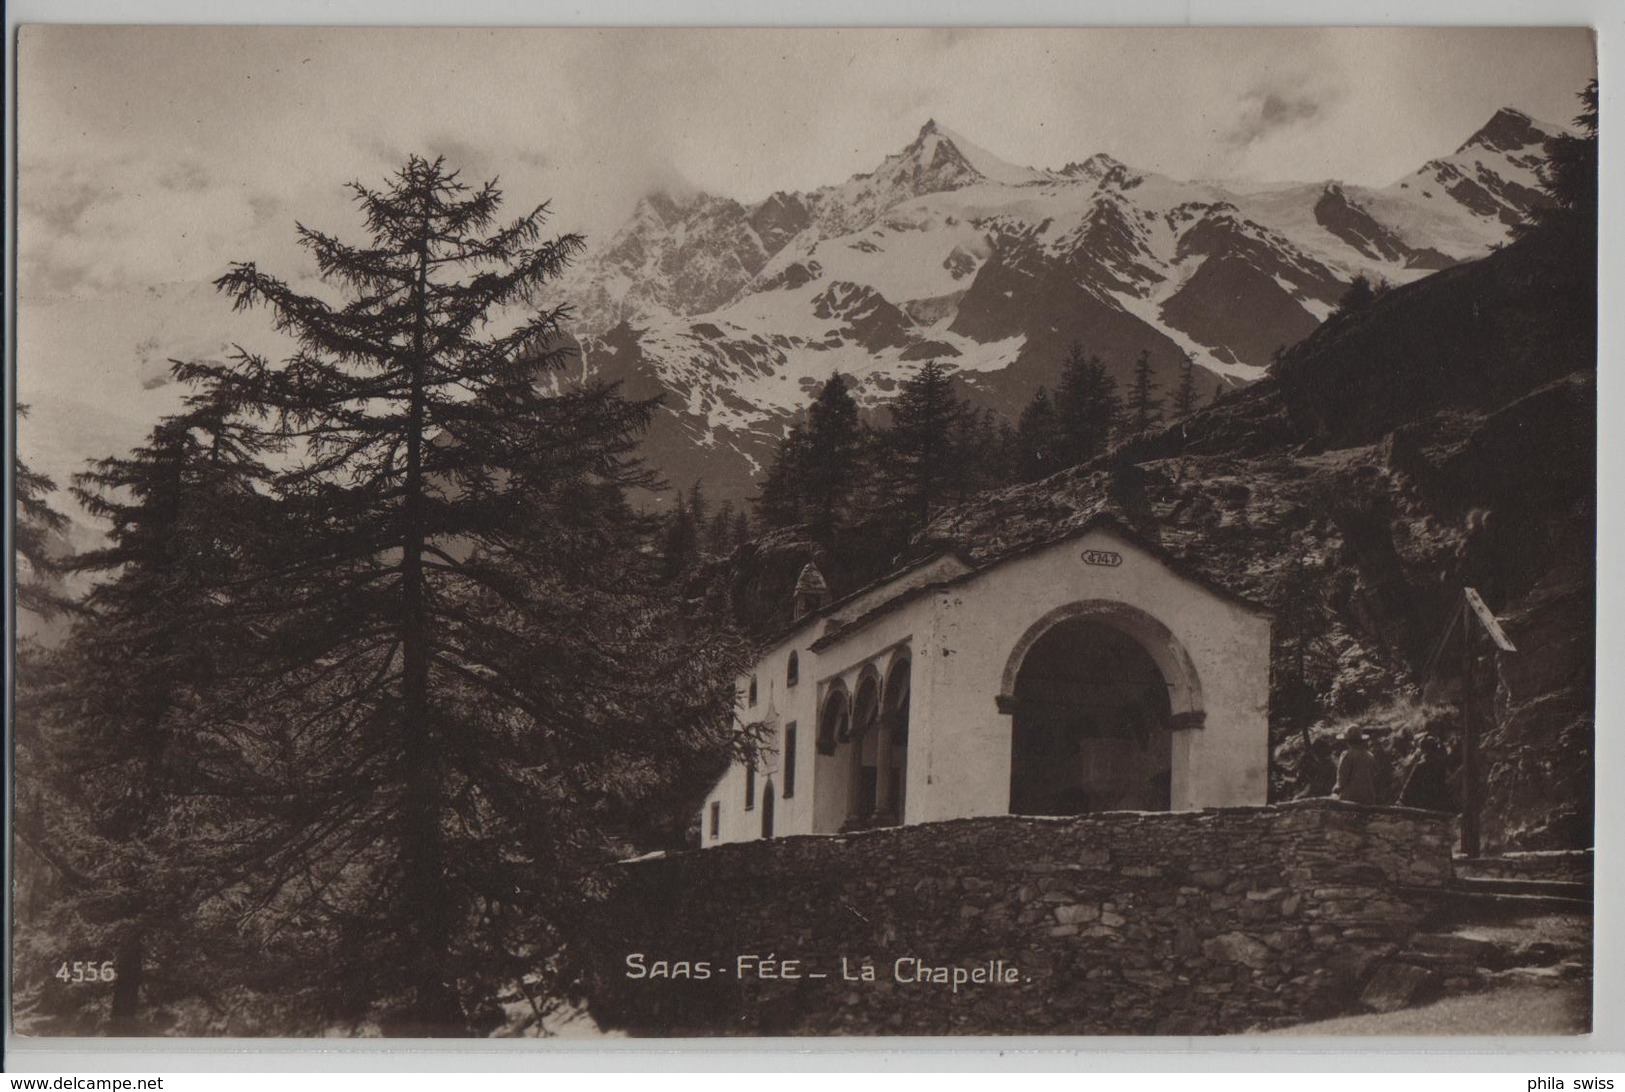 Saas-Fee - La Chapelle - Photo: Perrochet-Matile No. 4556 - Saas-Fee